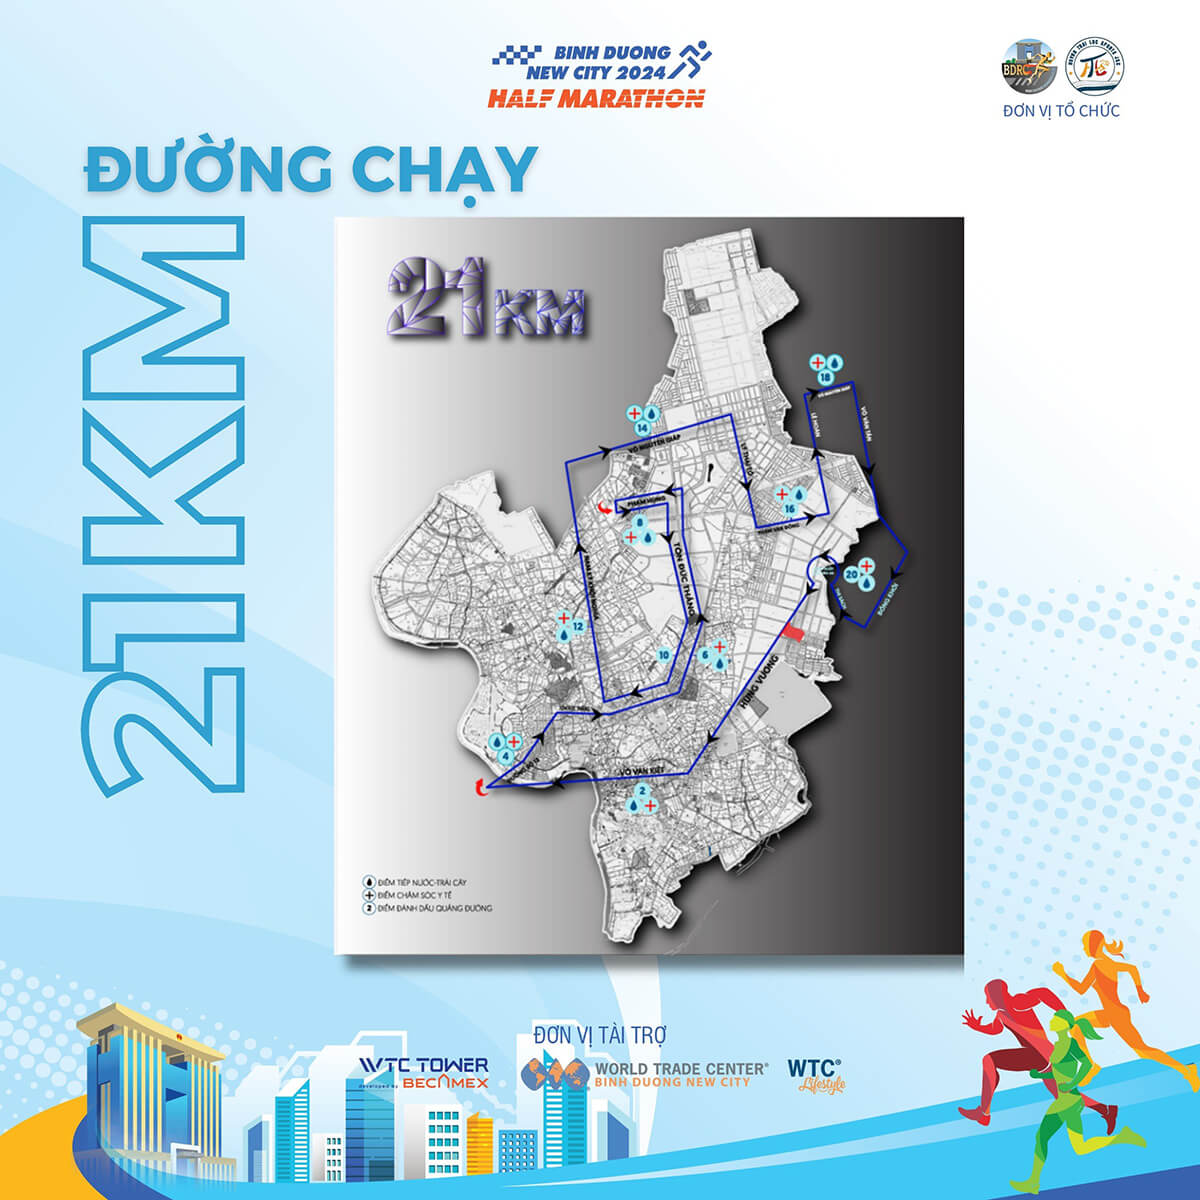 Bản đồ đường chạy 21km Bình Dương New City Half Marathon 2024